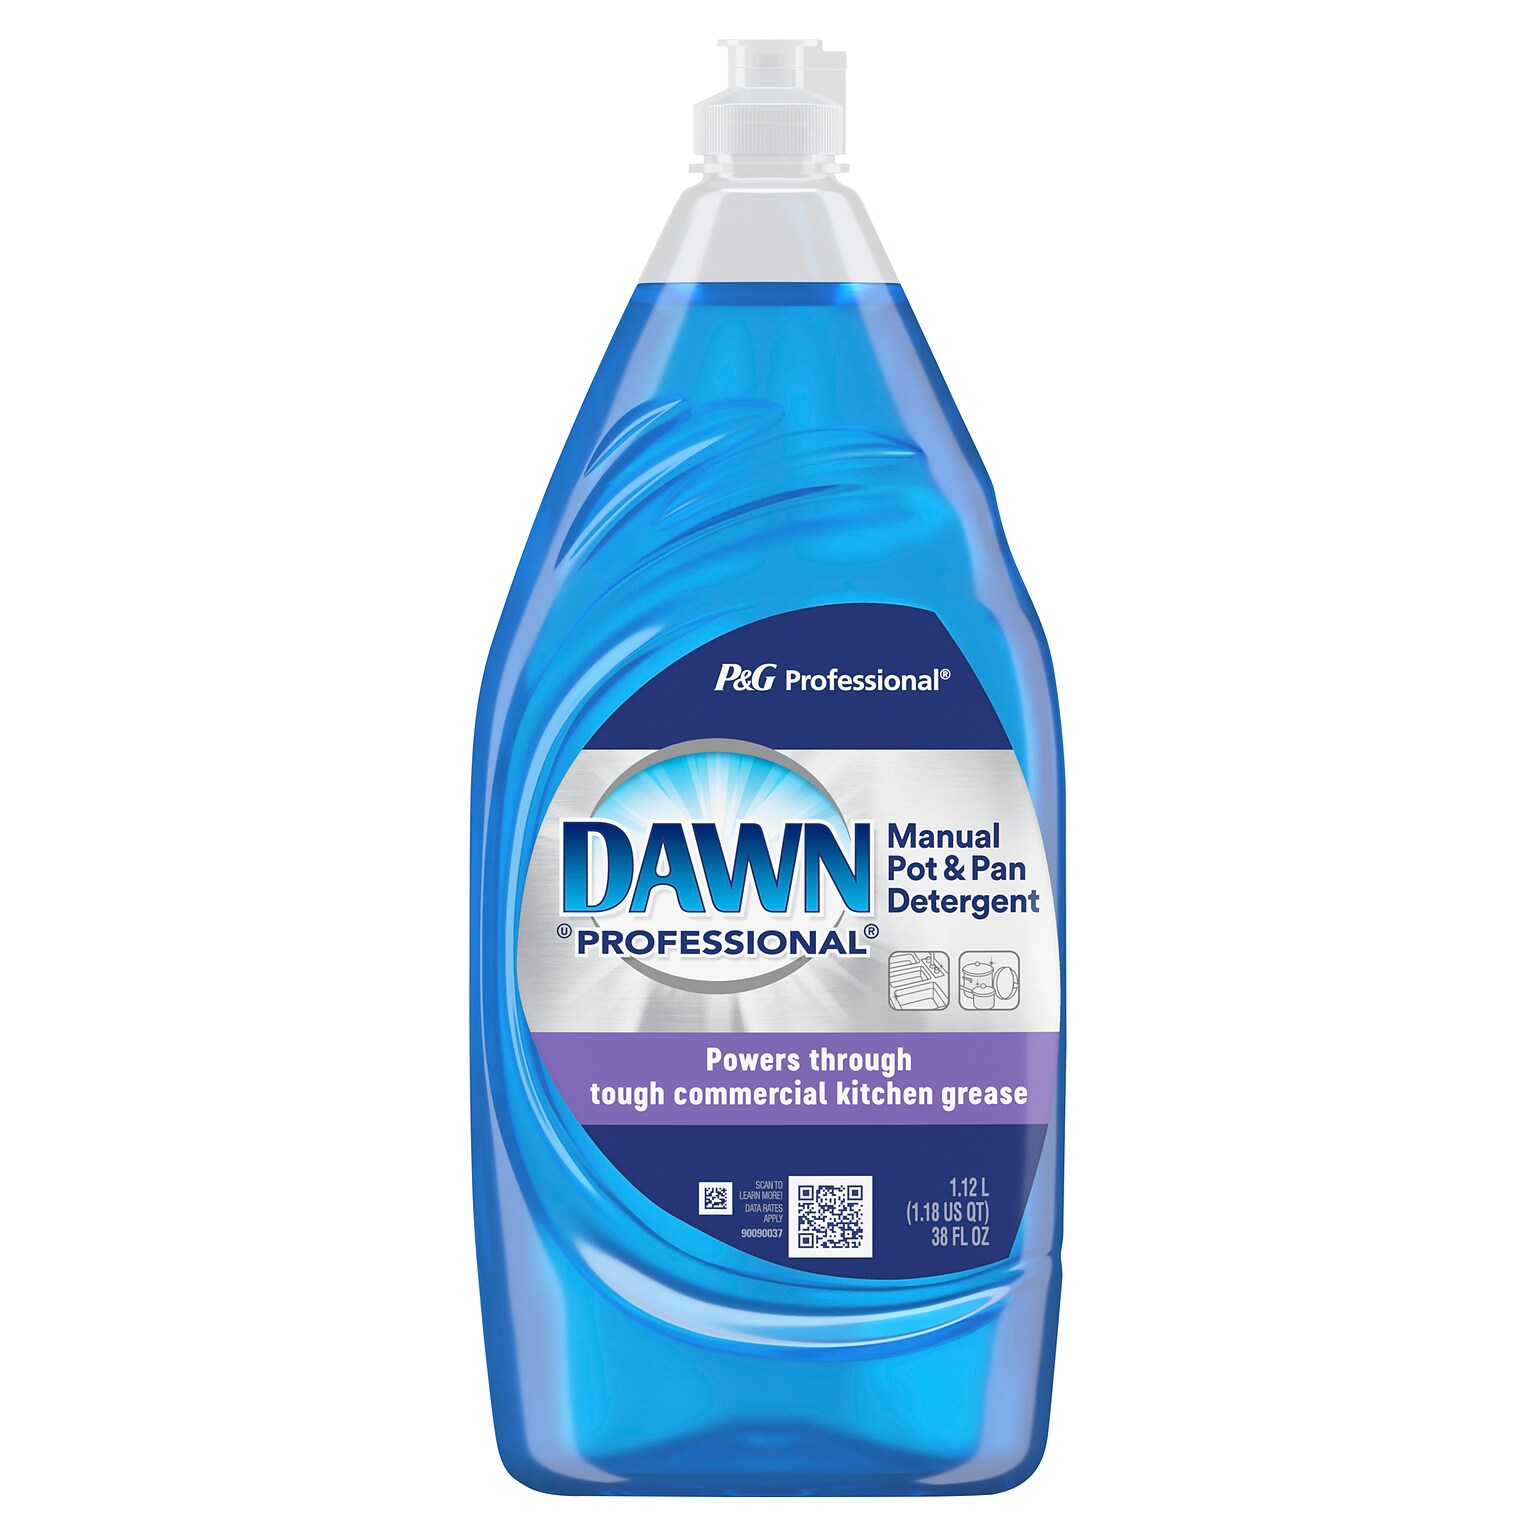 Dawn Professional Manual Pot and Pan Detergent Dish Soap, Liquid Concentrate, 38 fl oz. (45112)